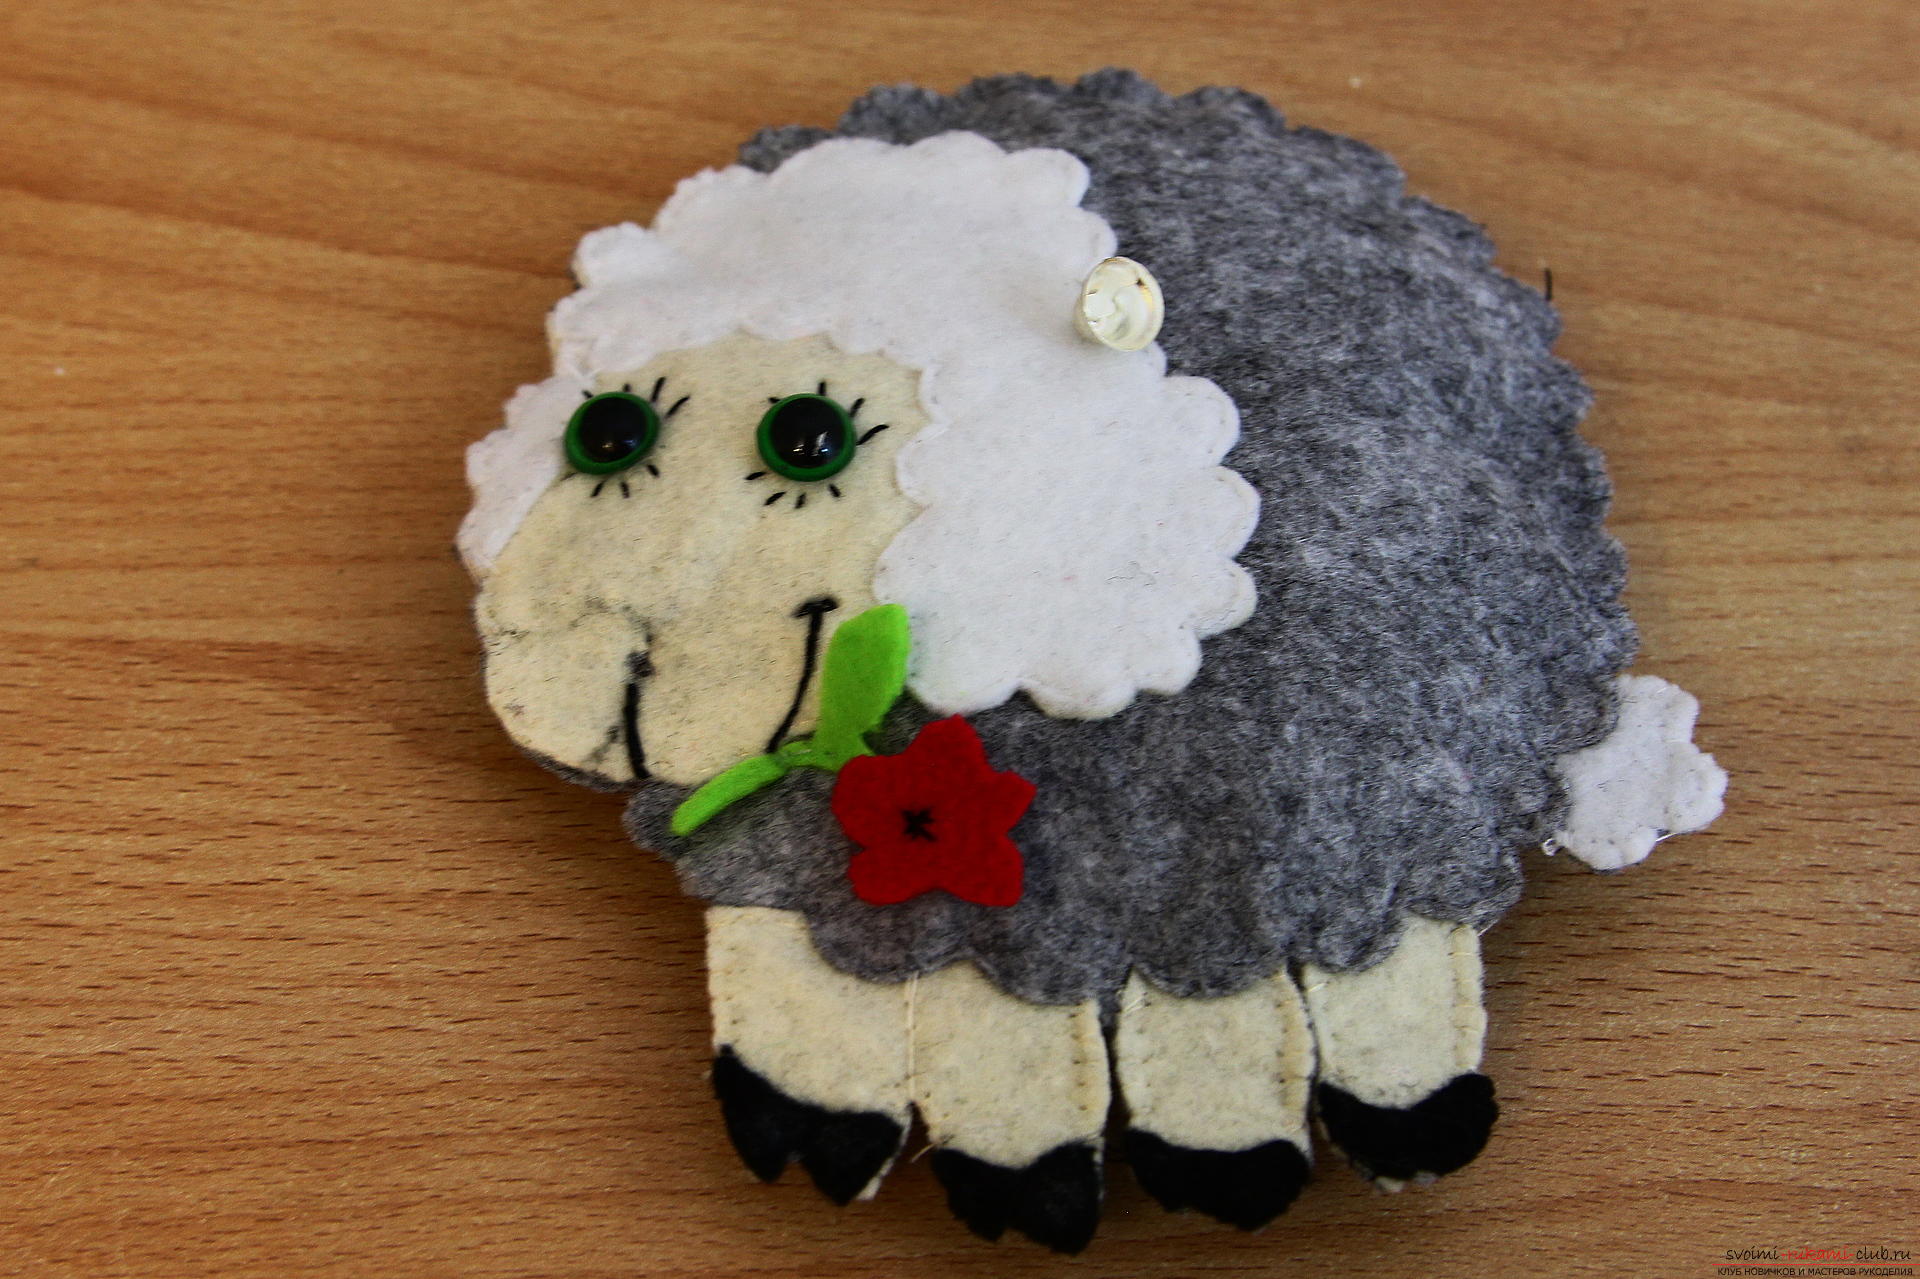 Deze masterclass leert hoe je een speelgoed Dolly uit schapenvilt kunt naaien met haar eigen handen